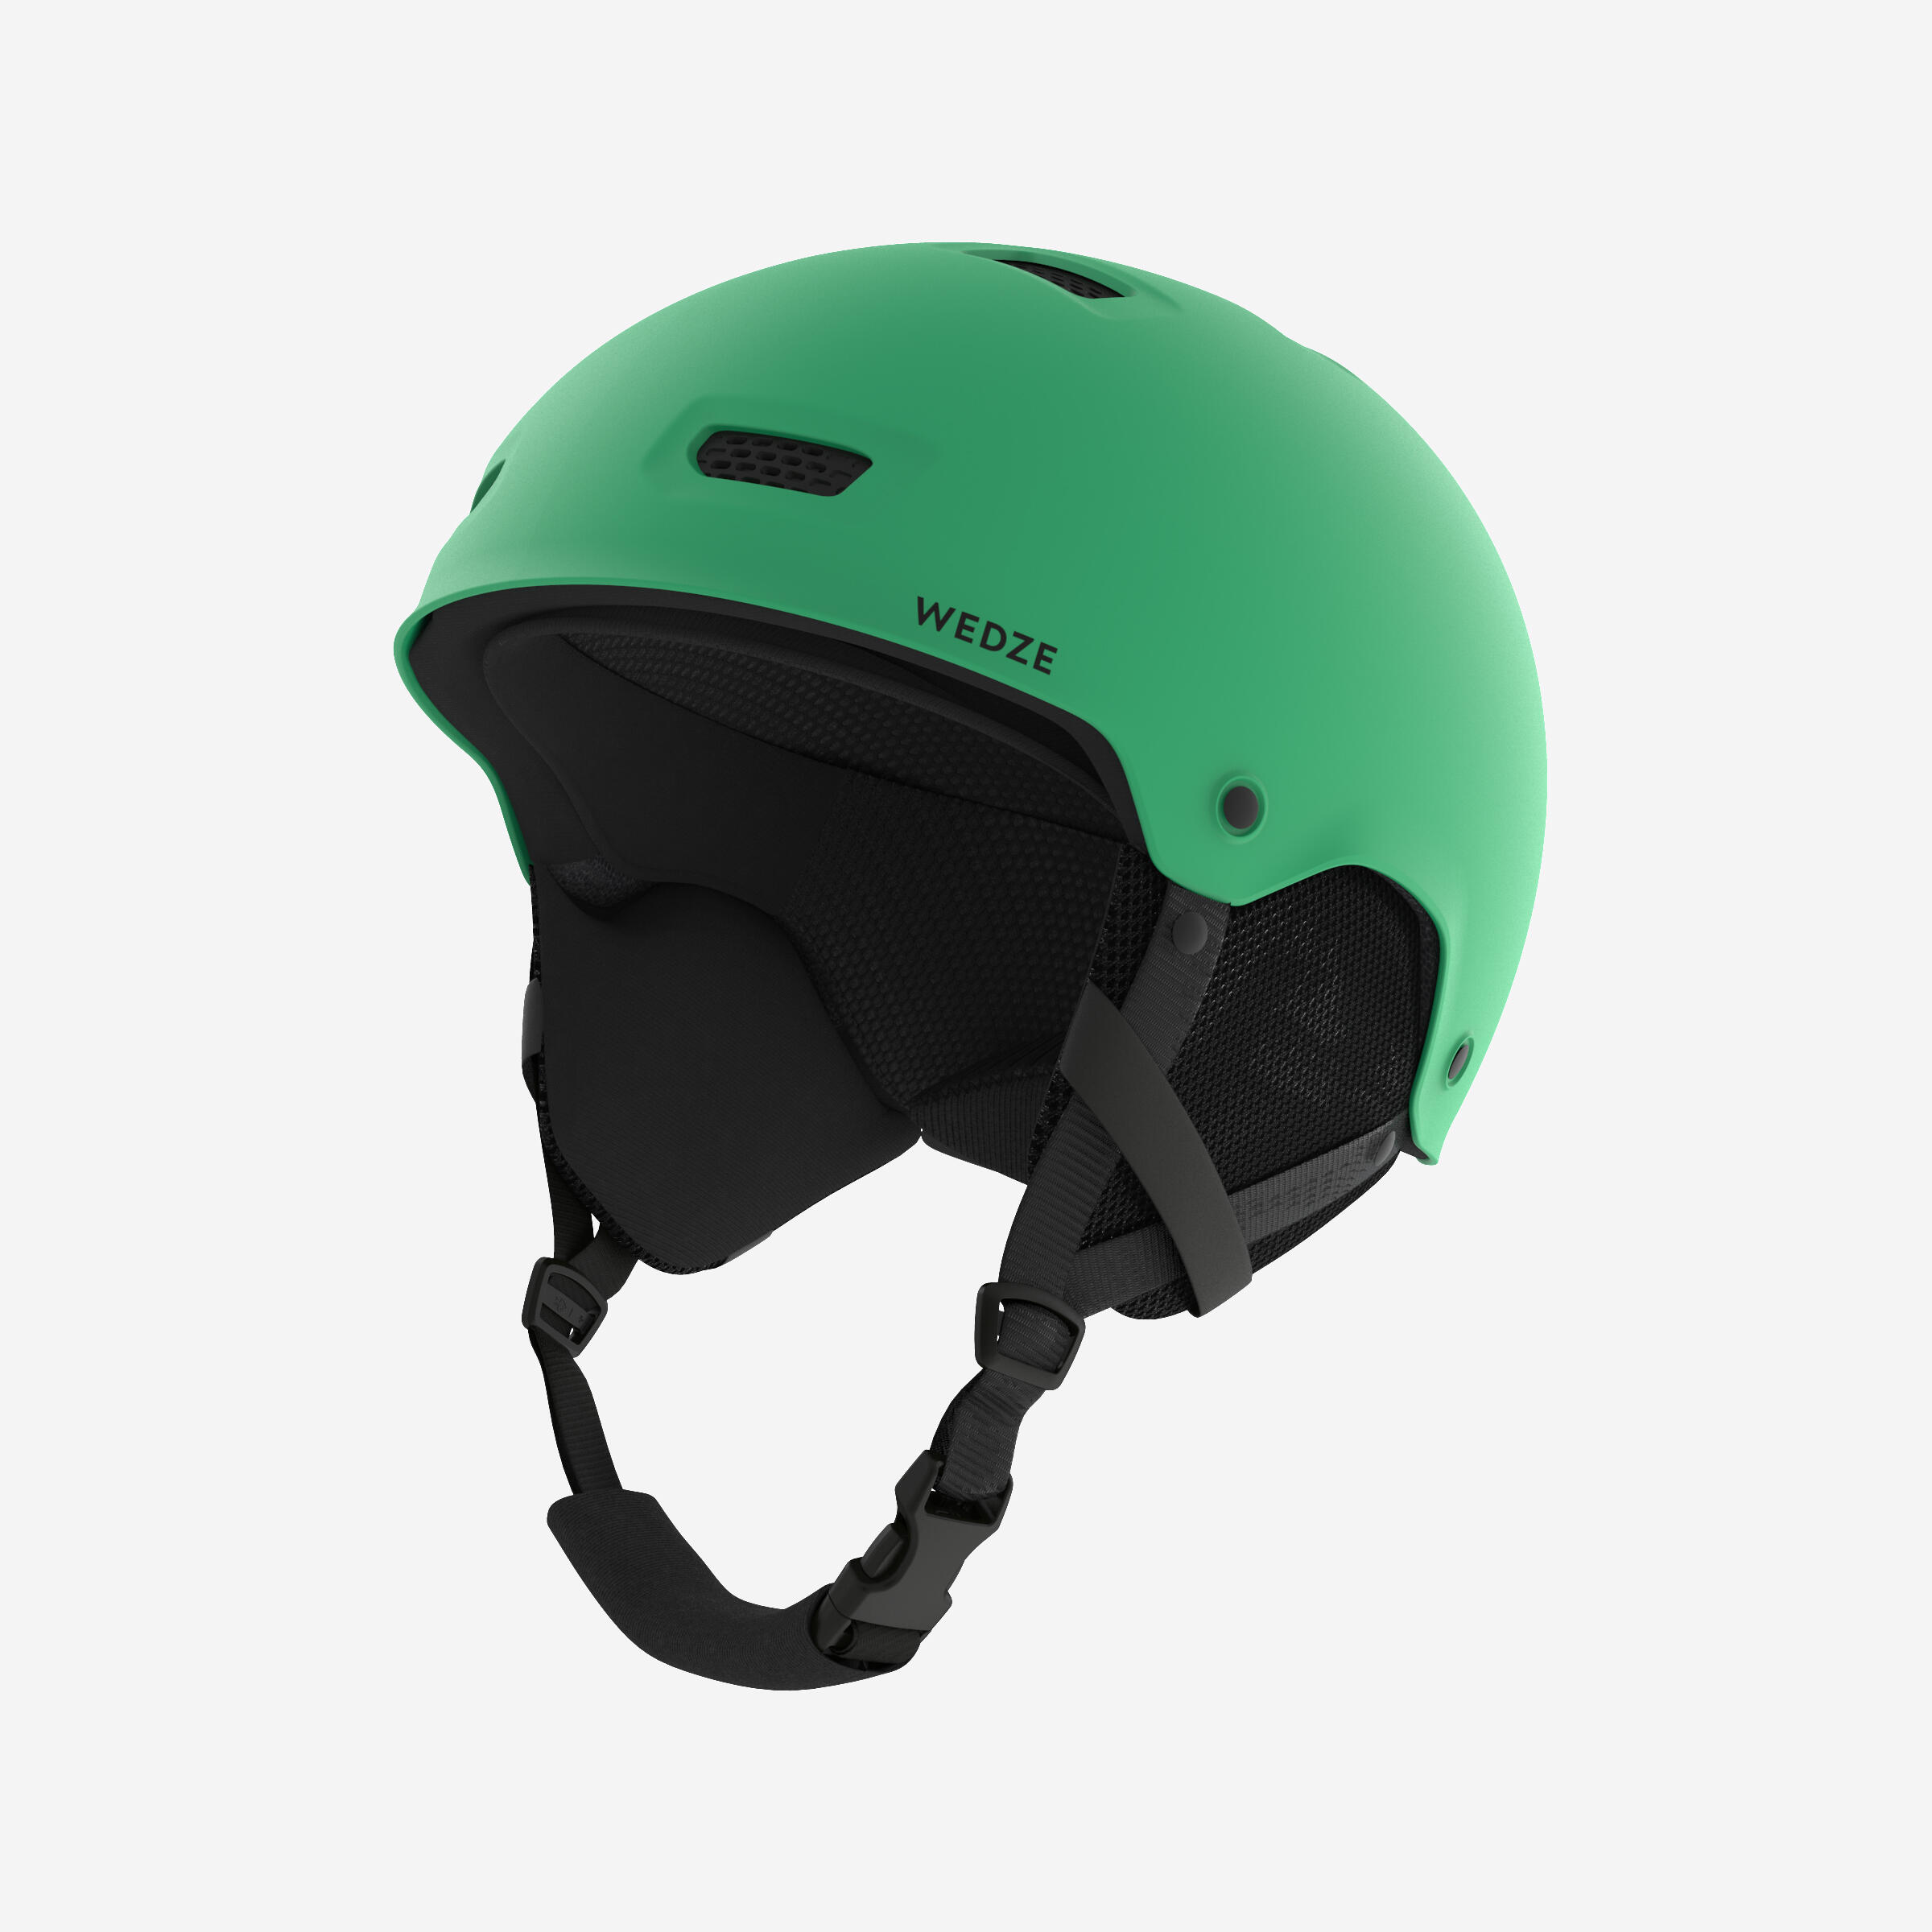 DREAMSCAPE Adult/juniors ski and snowboard helmet - H-FS 300 - green